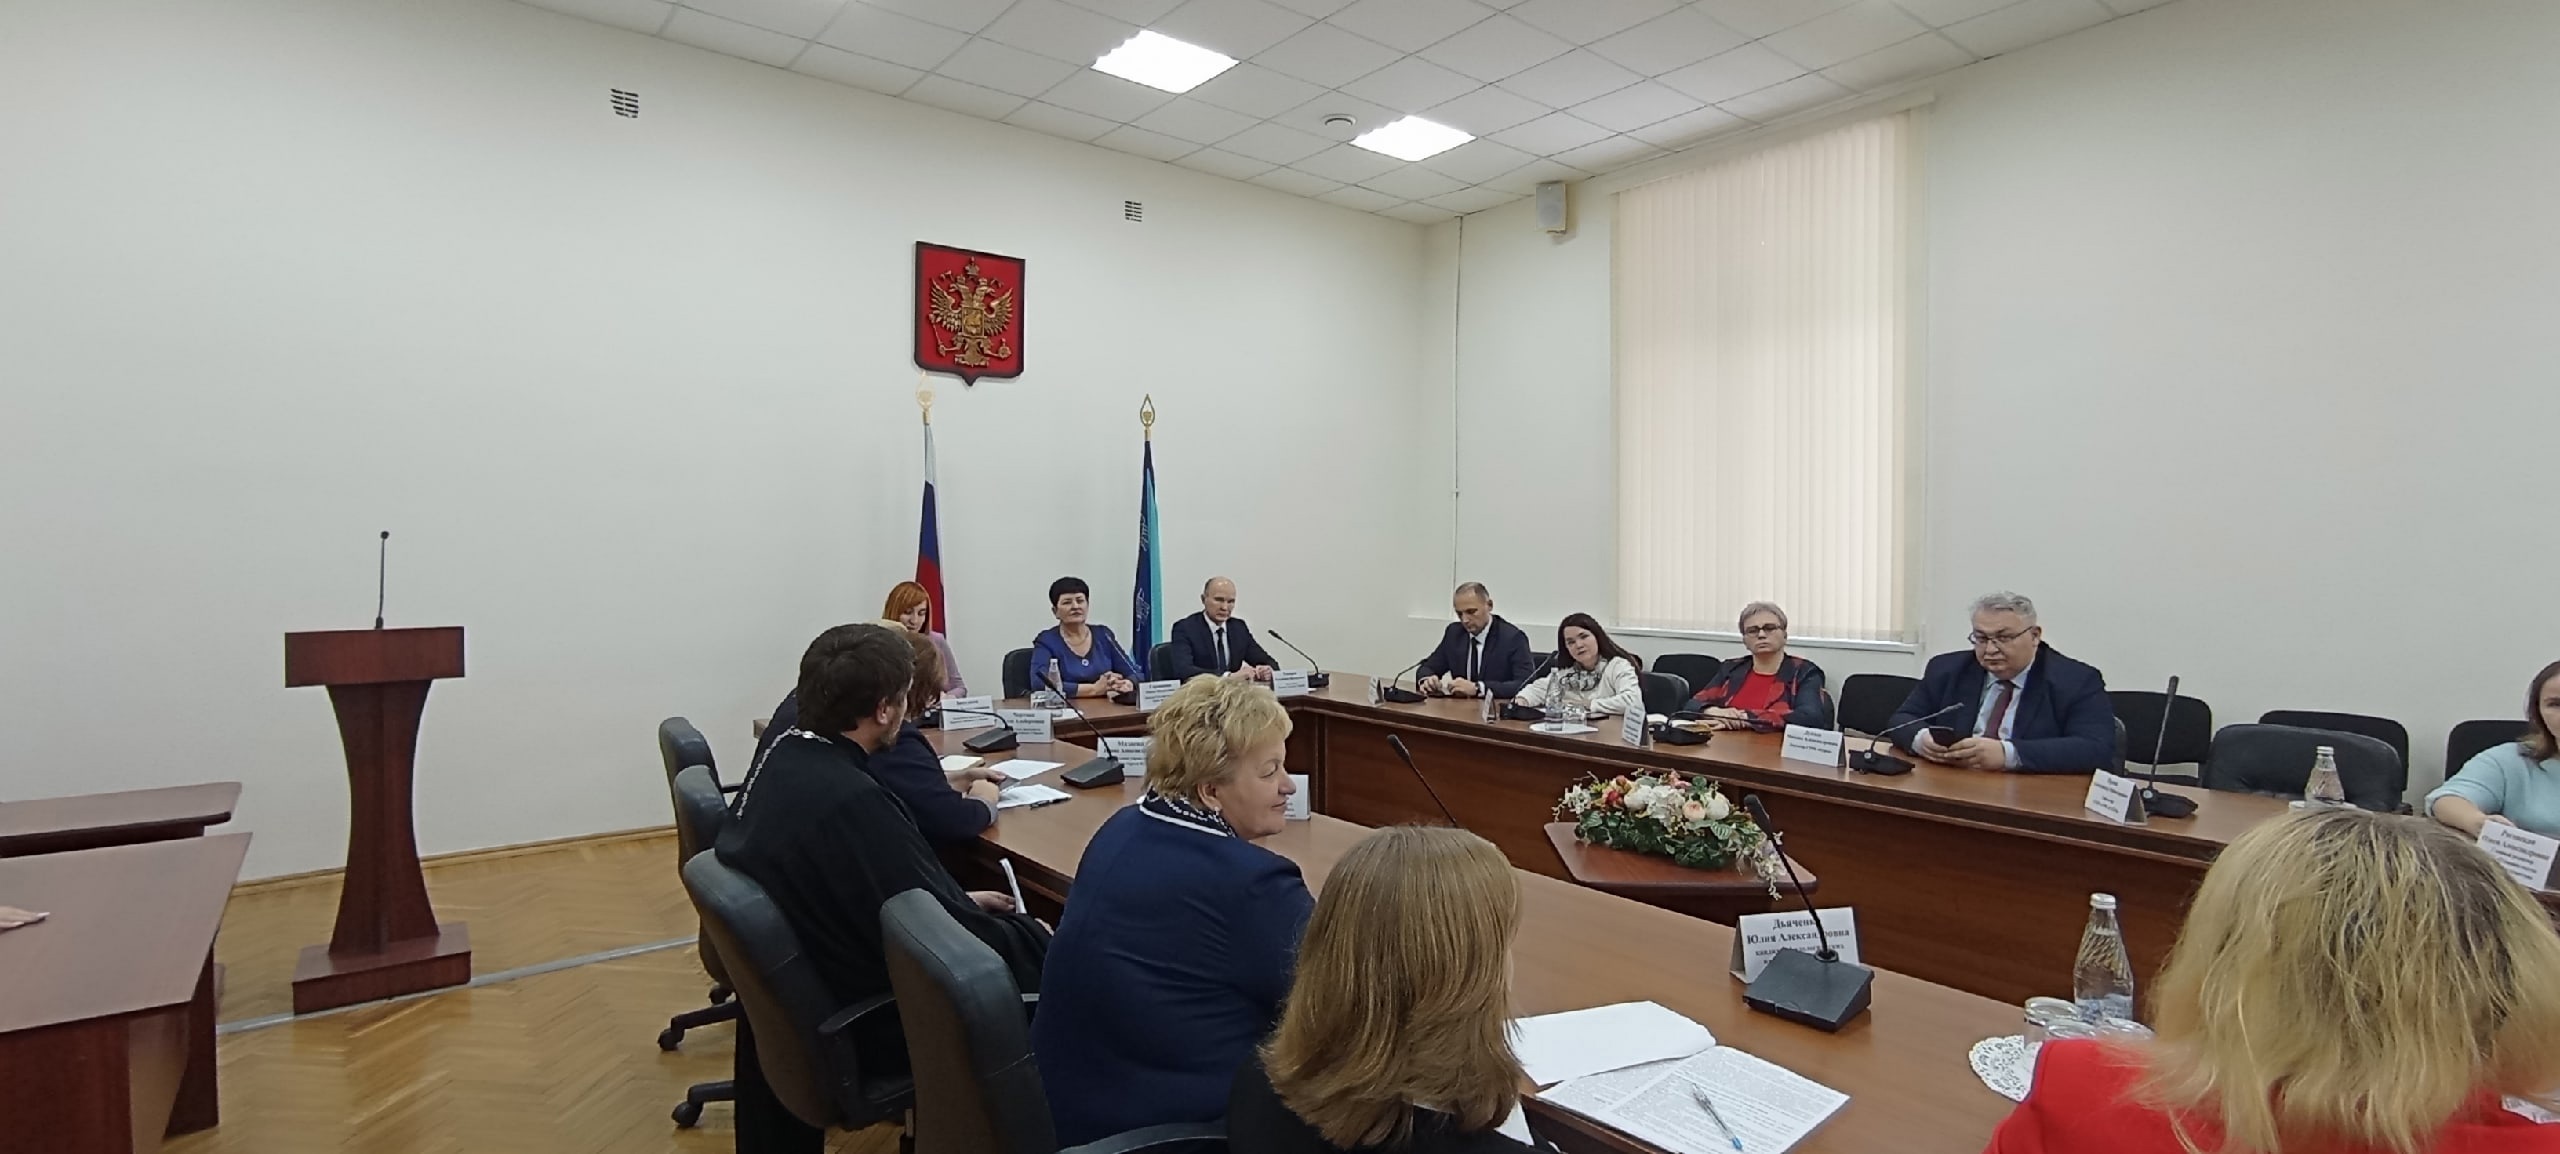 В мэрии Курска обсудили законопроект, касающийся русского языка